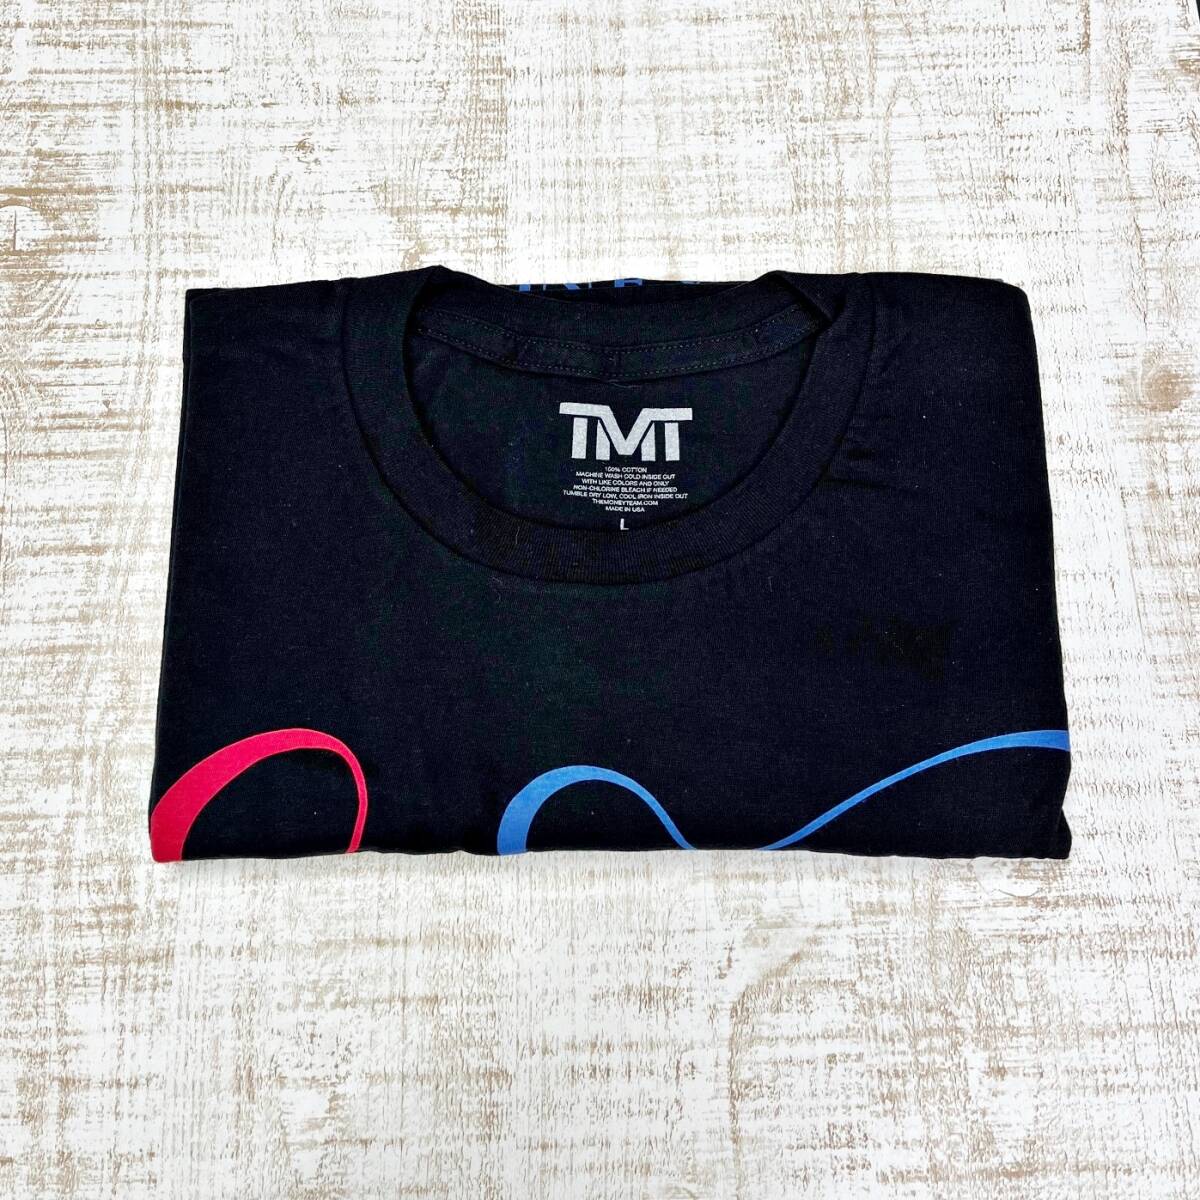 フロイド メイウェザー ジュニア The Money Team TMT Tシャツ Tee レア品 初期モデル (L / ブラック) ボクシング コレクションにどうぞ!!の画像6